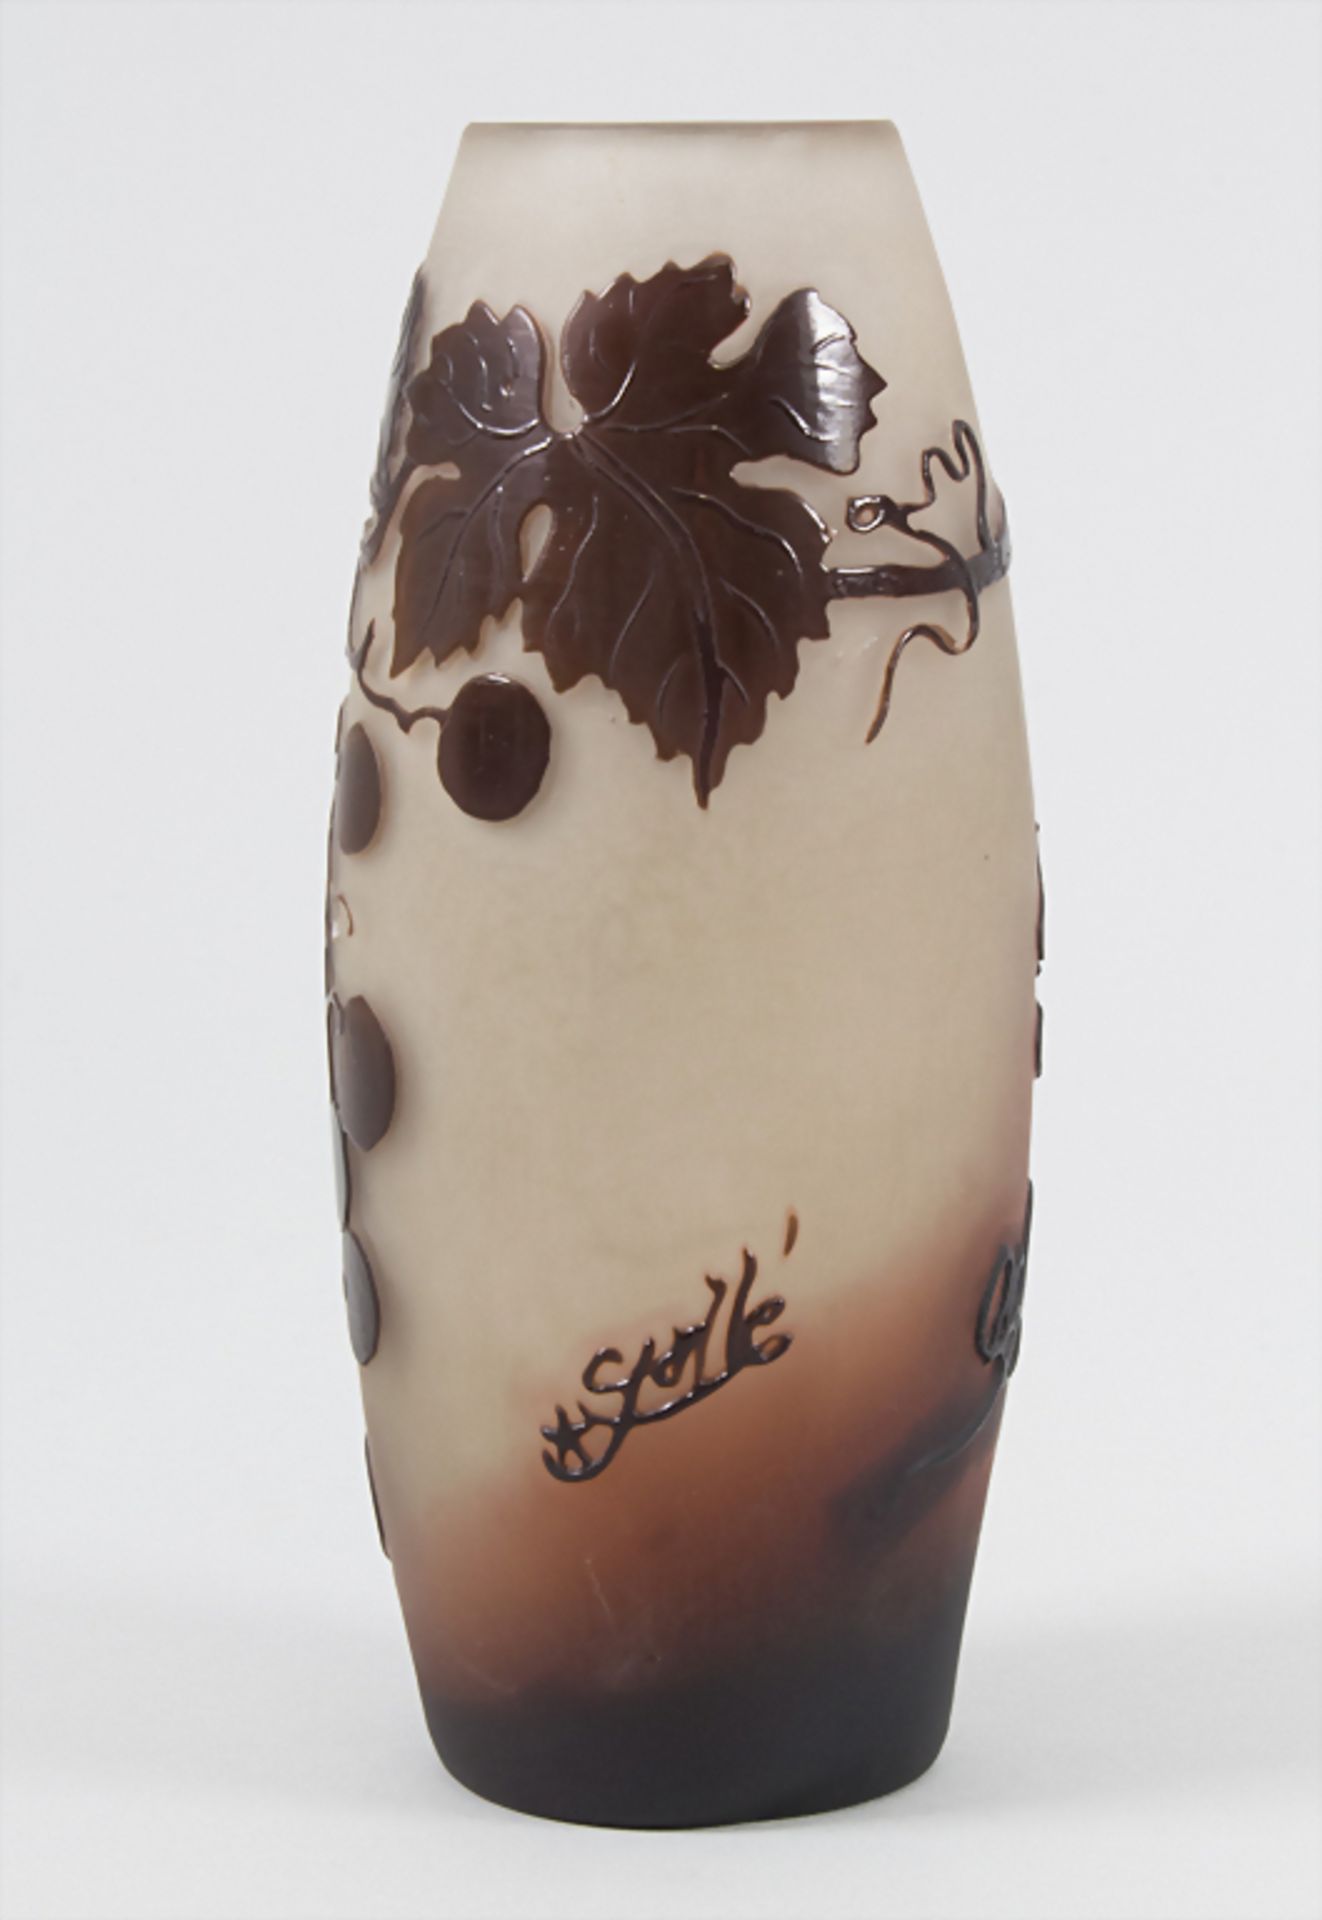 Jugendstil Vase mit Wein / An Art Nouveau cameo glass vase with wine, Emile Gallé, Ecole de Nancy, - Bild 4 aus 9